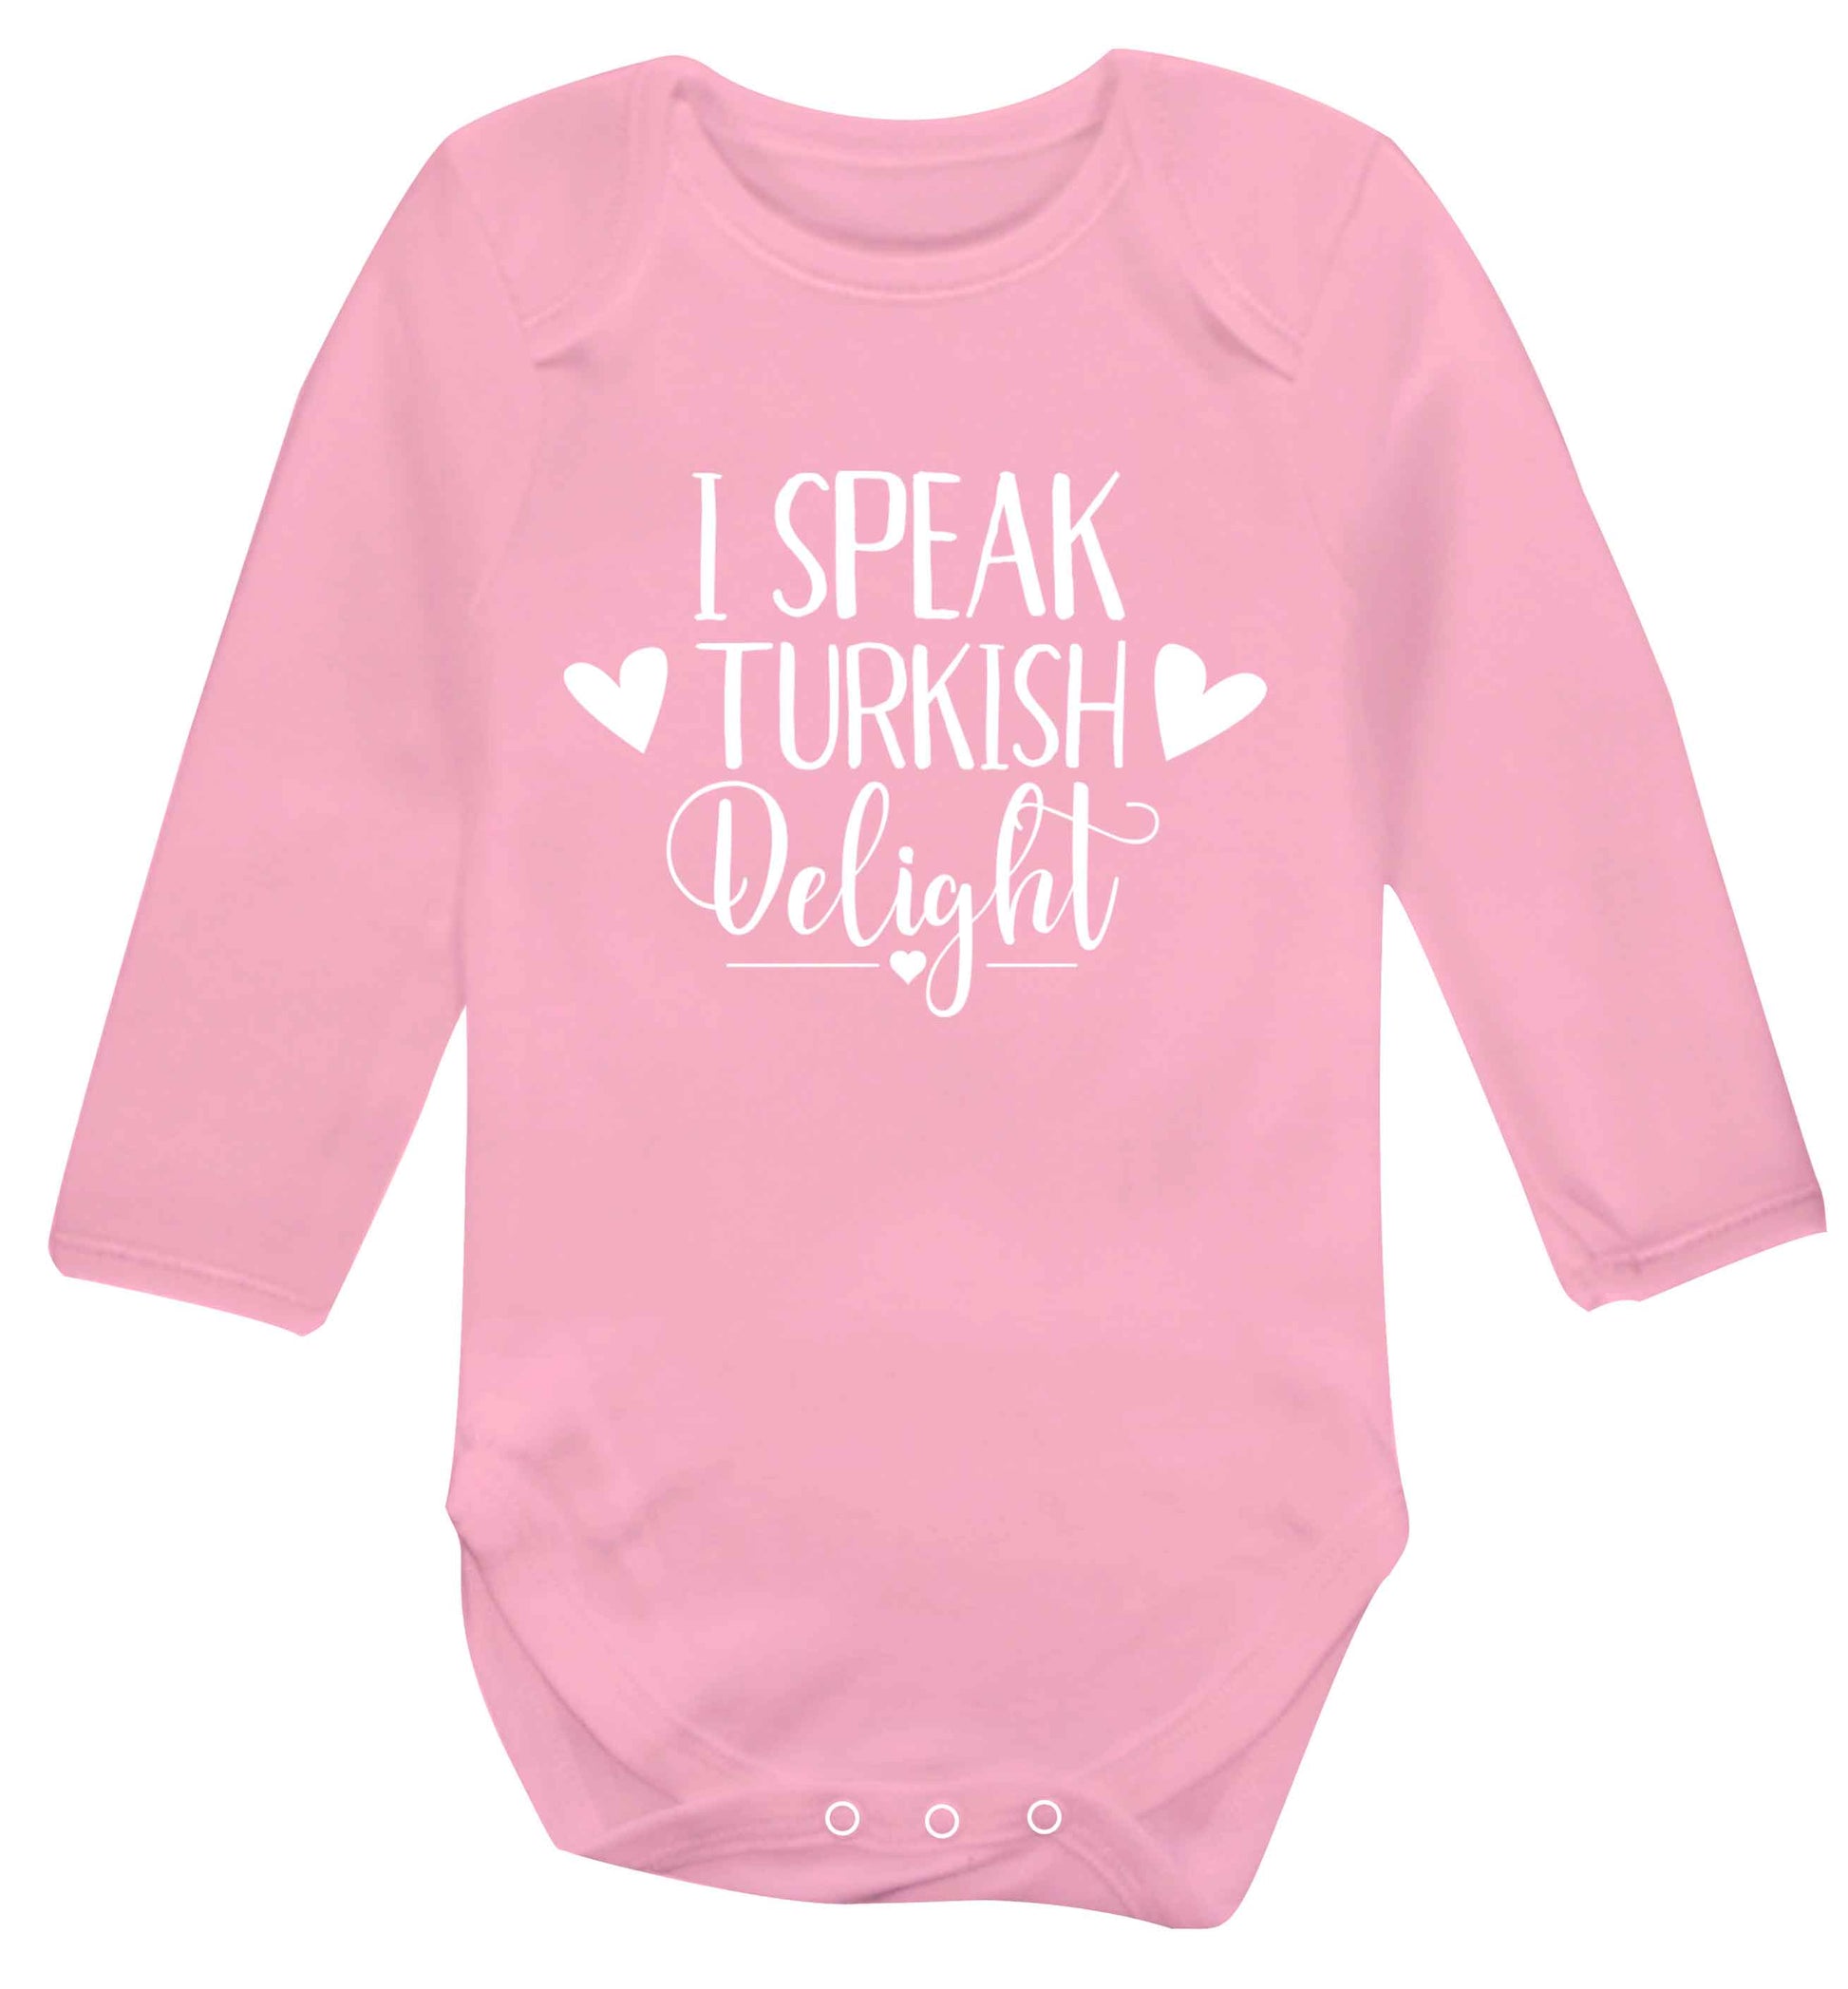 I speak turkish...delight Baby Vest long sleeved pale pink 6-12 months